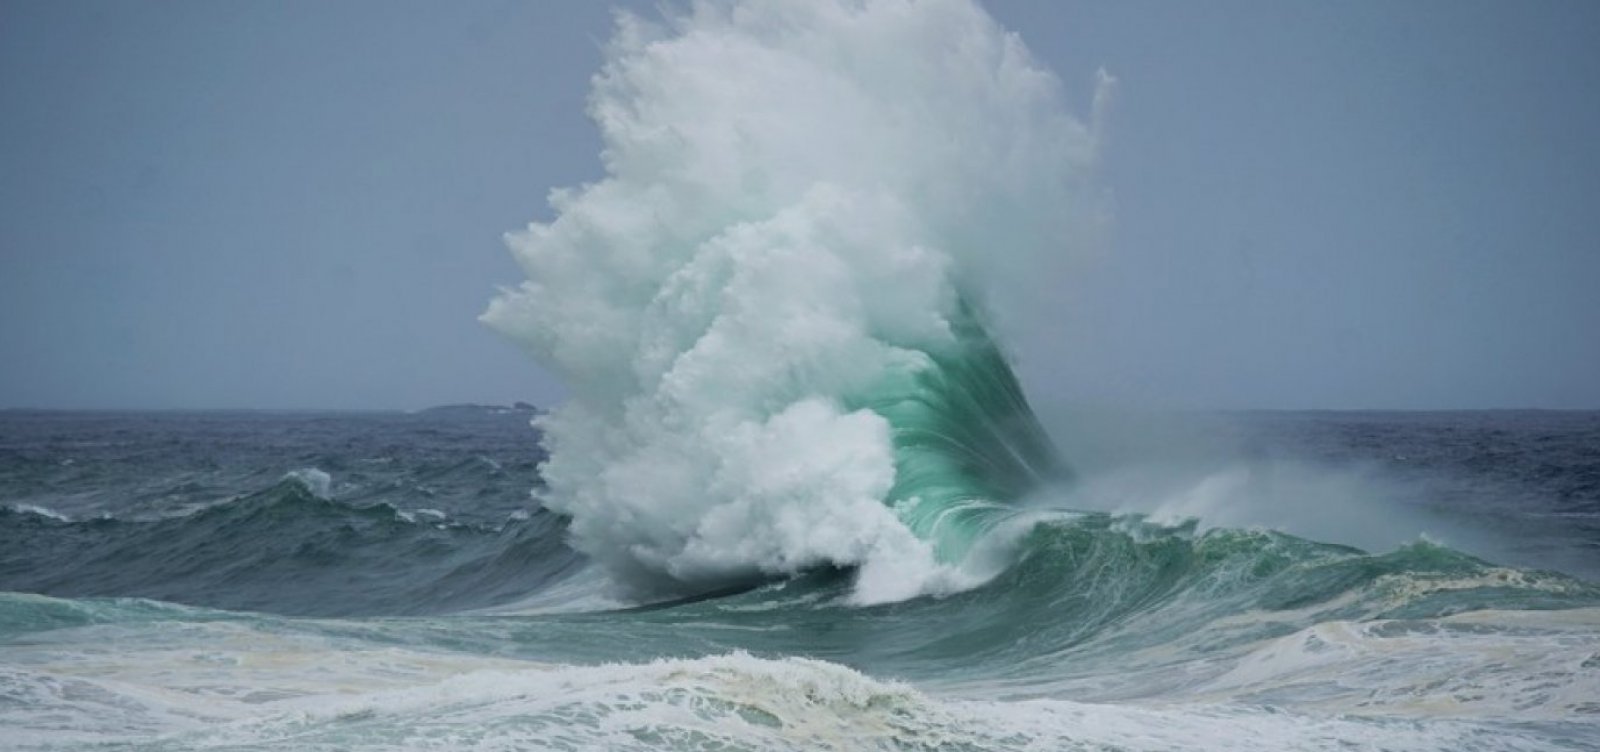 Marinha emite alerta de ressaca com ondas de até 2,5 metros em Salvador